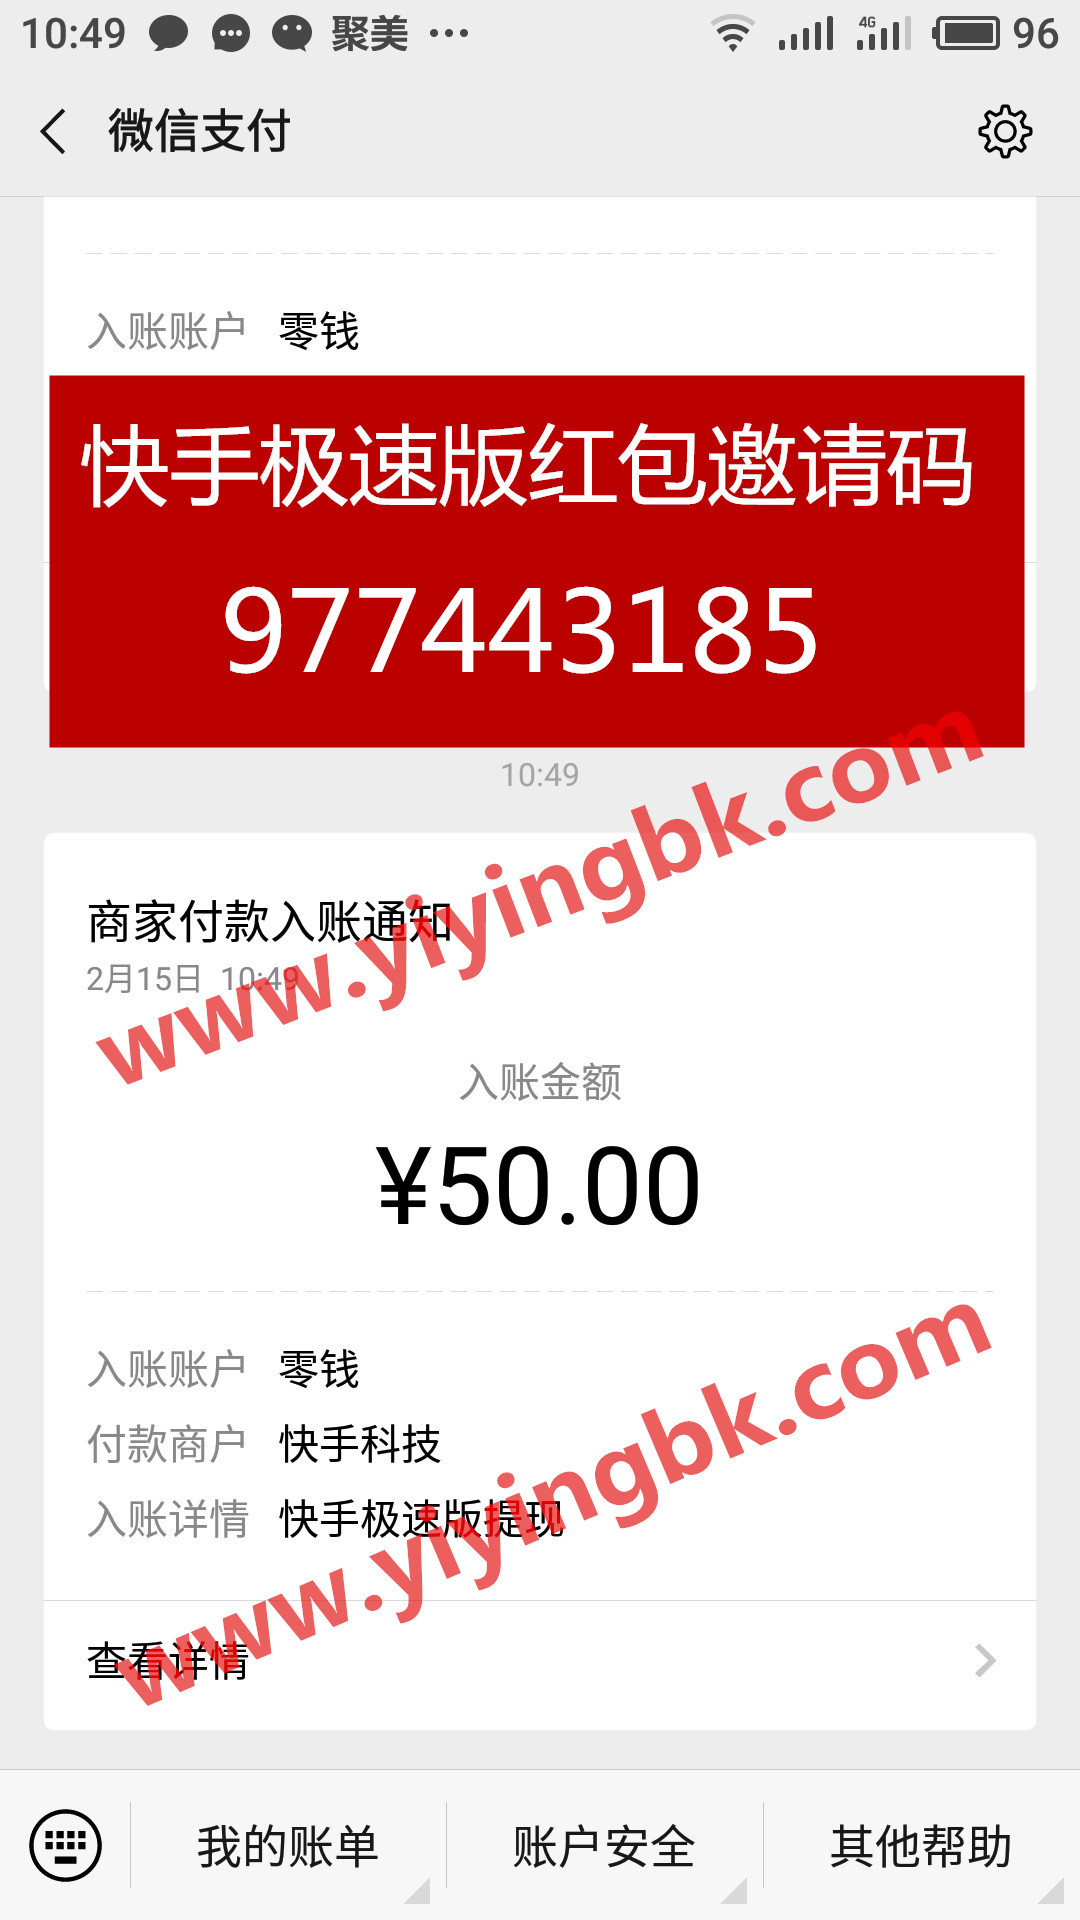 快手极速版，看视频领红包赚钱，微信提现50元秒到账。www.yiyingbk.com